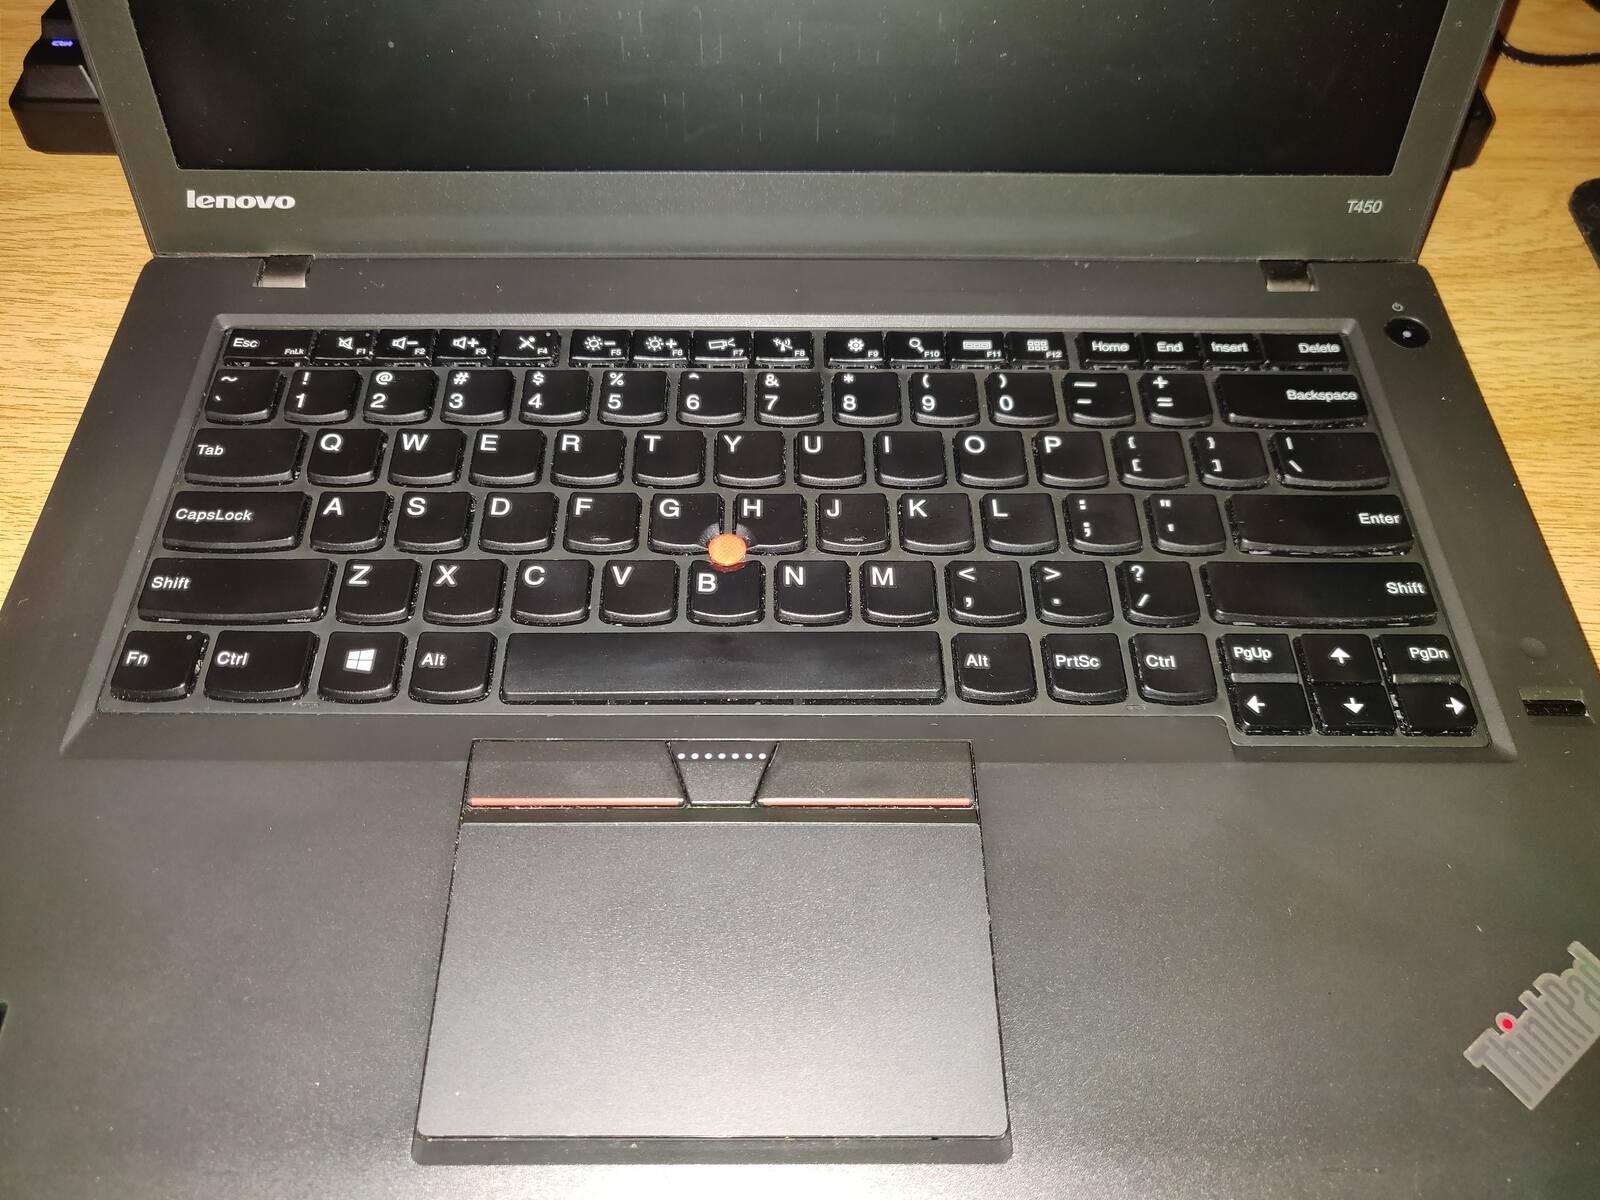 T450 Keyboard Details